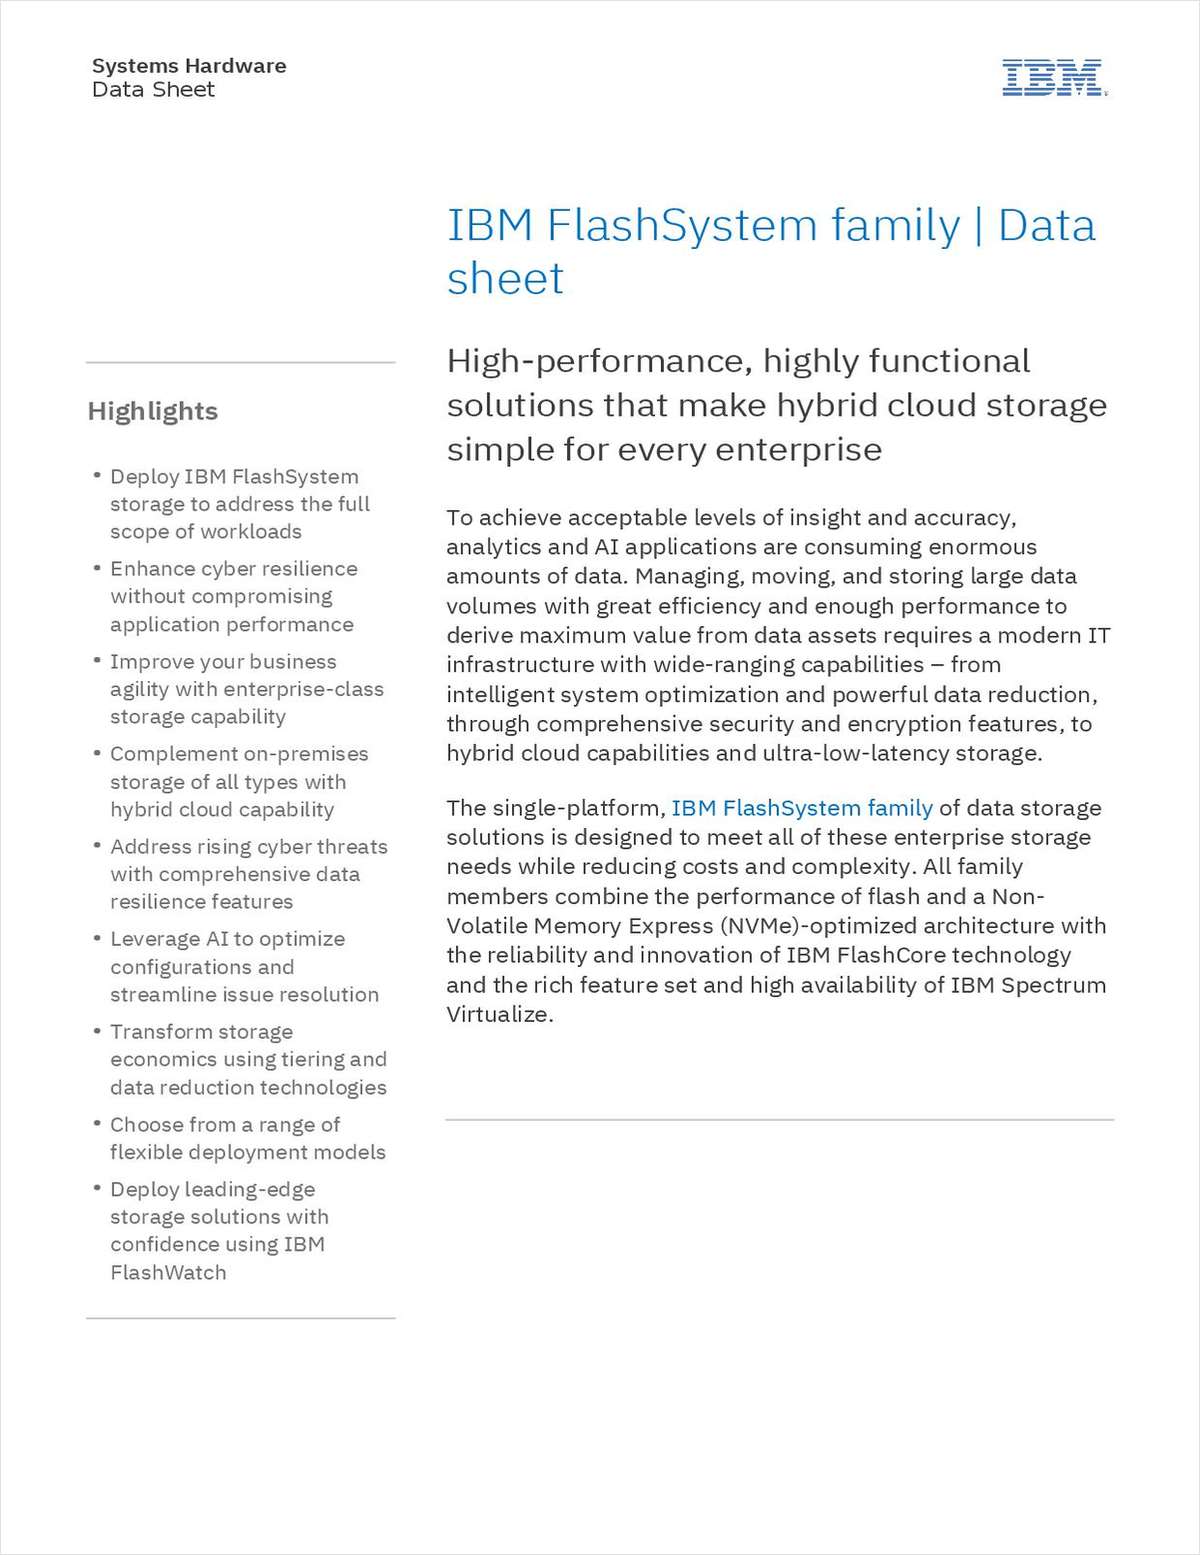 IBM FlashSystem family | Data sheet